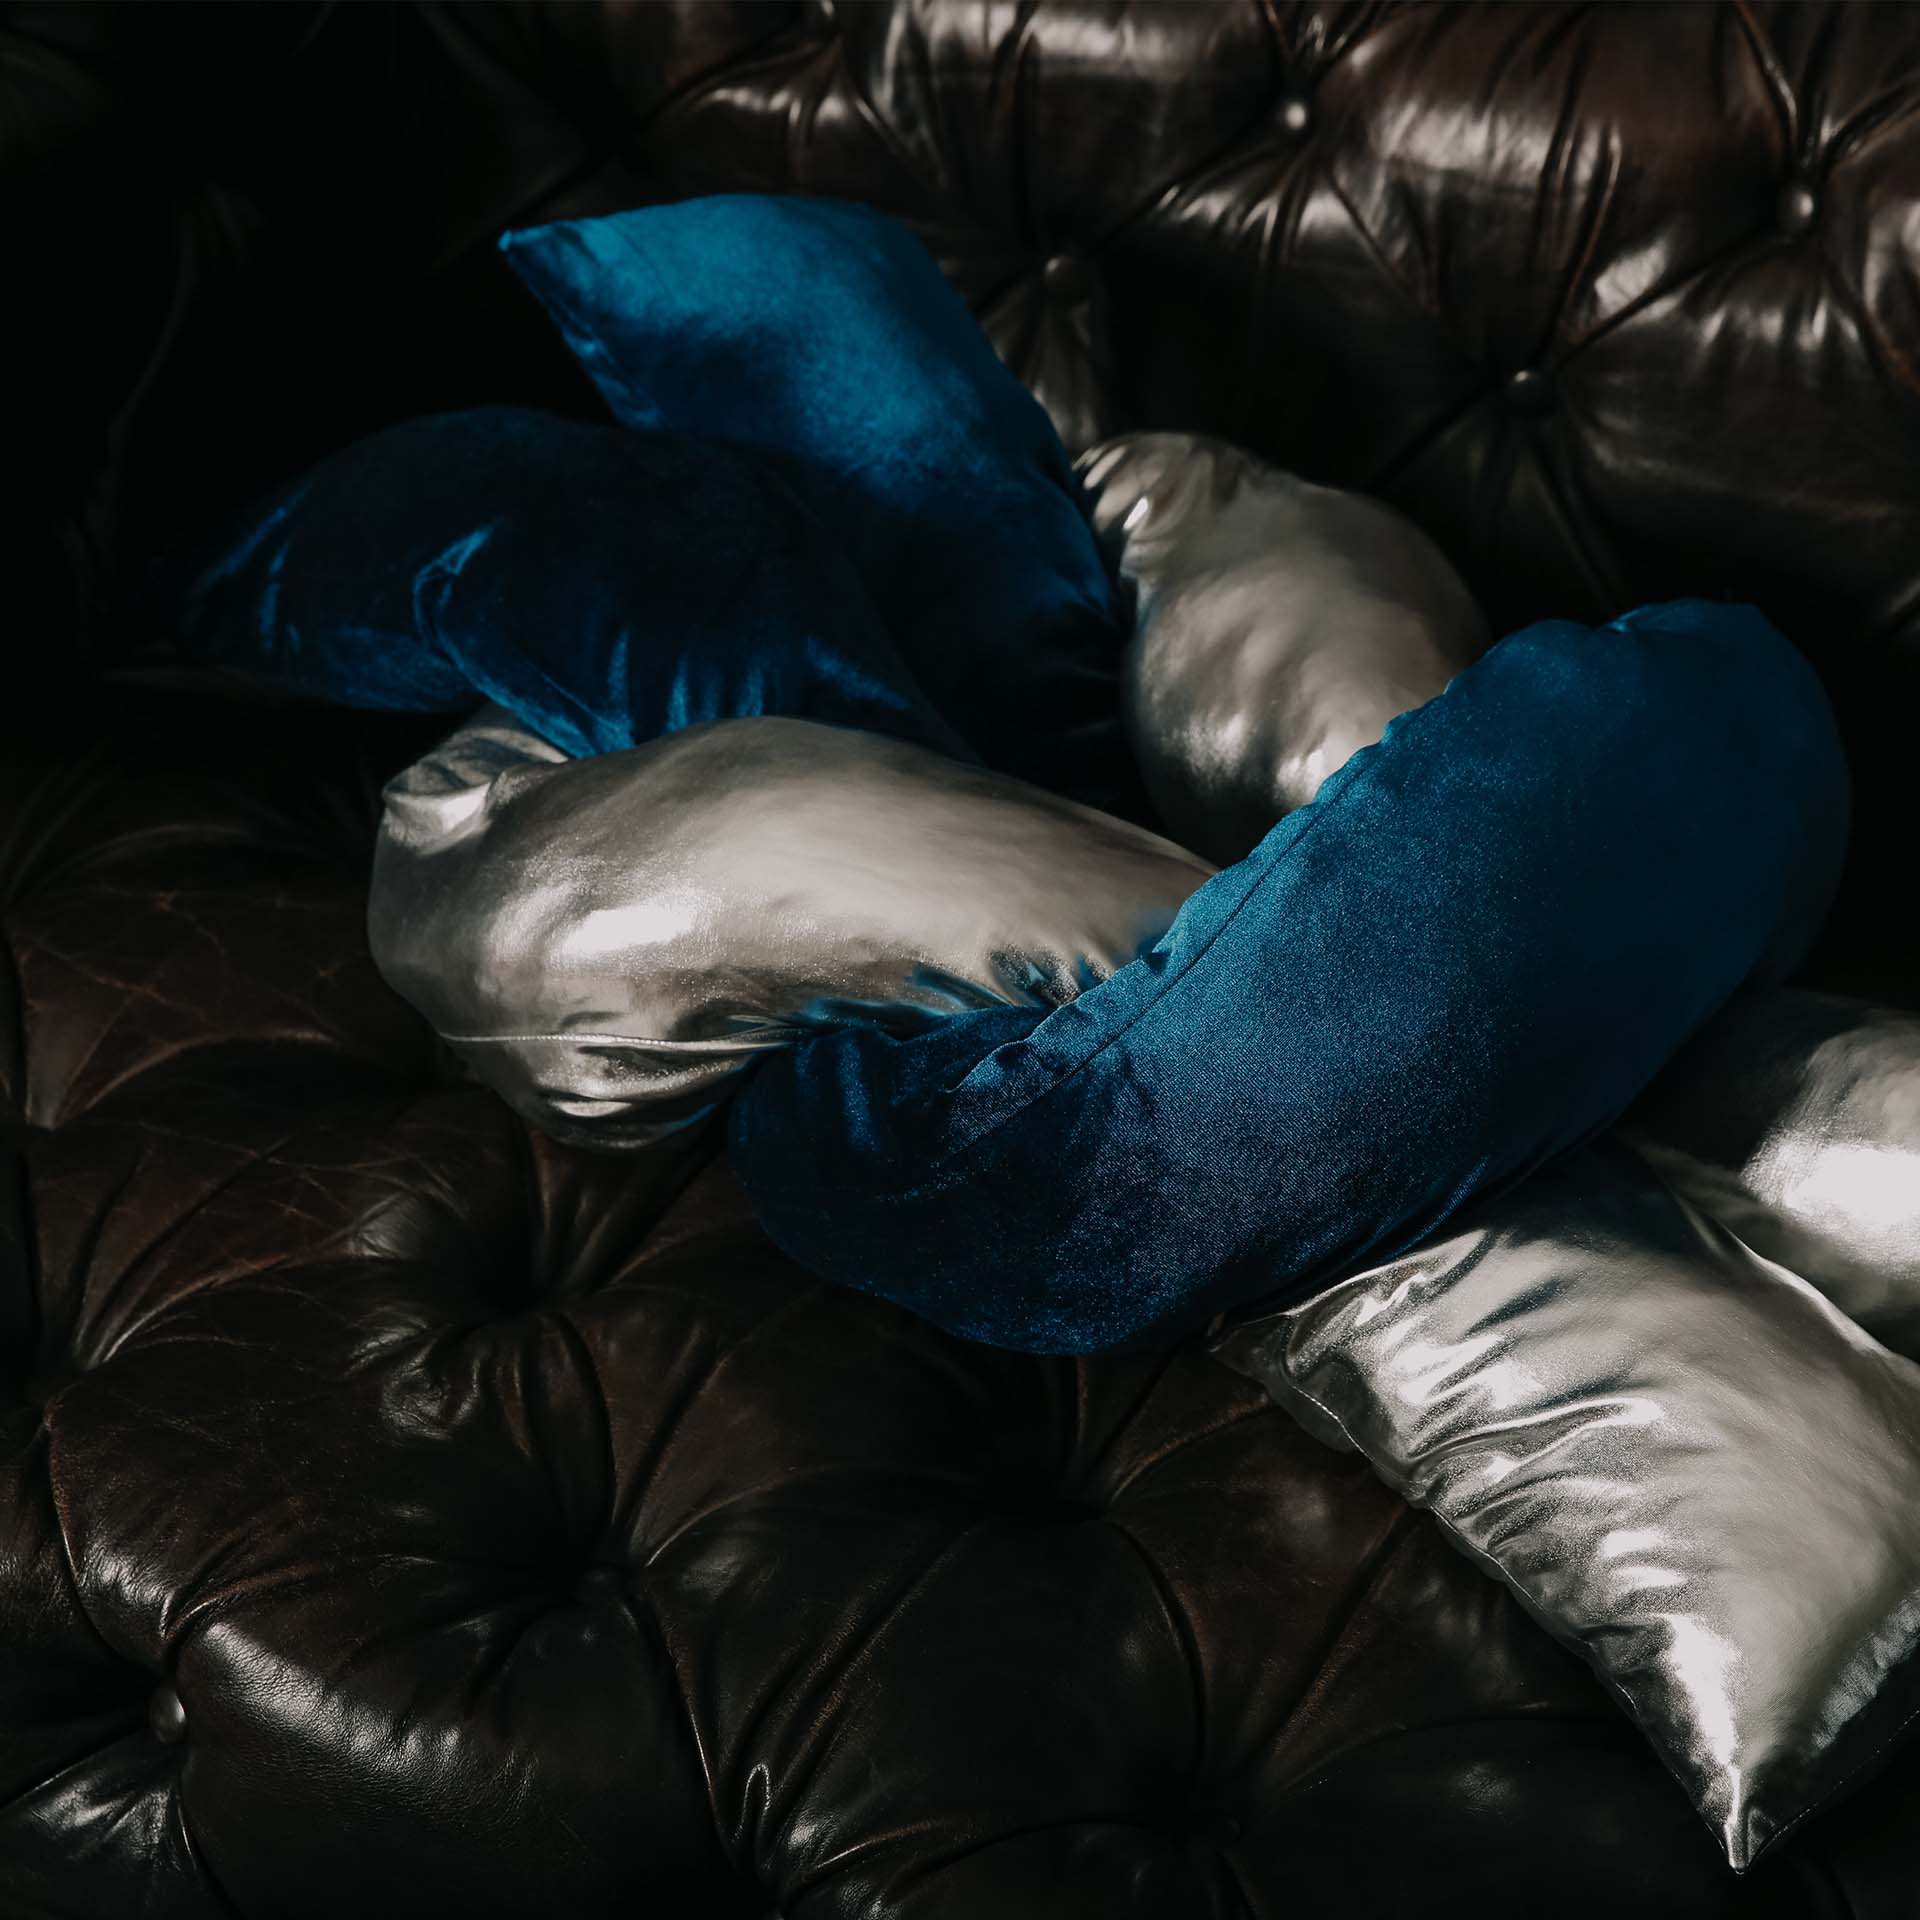 Navy Blue Velvet Pearl Pillow